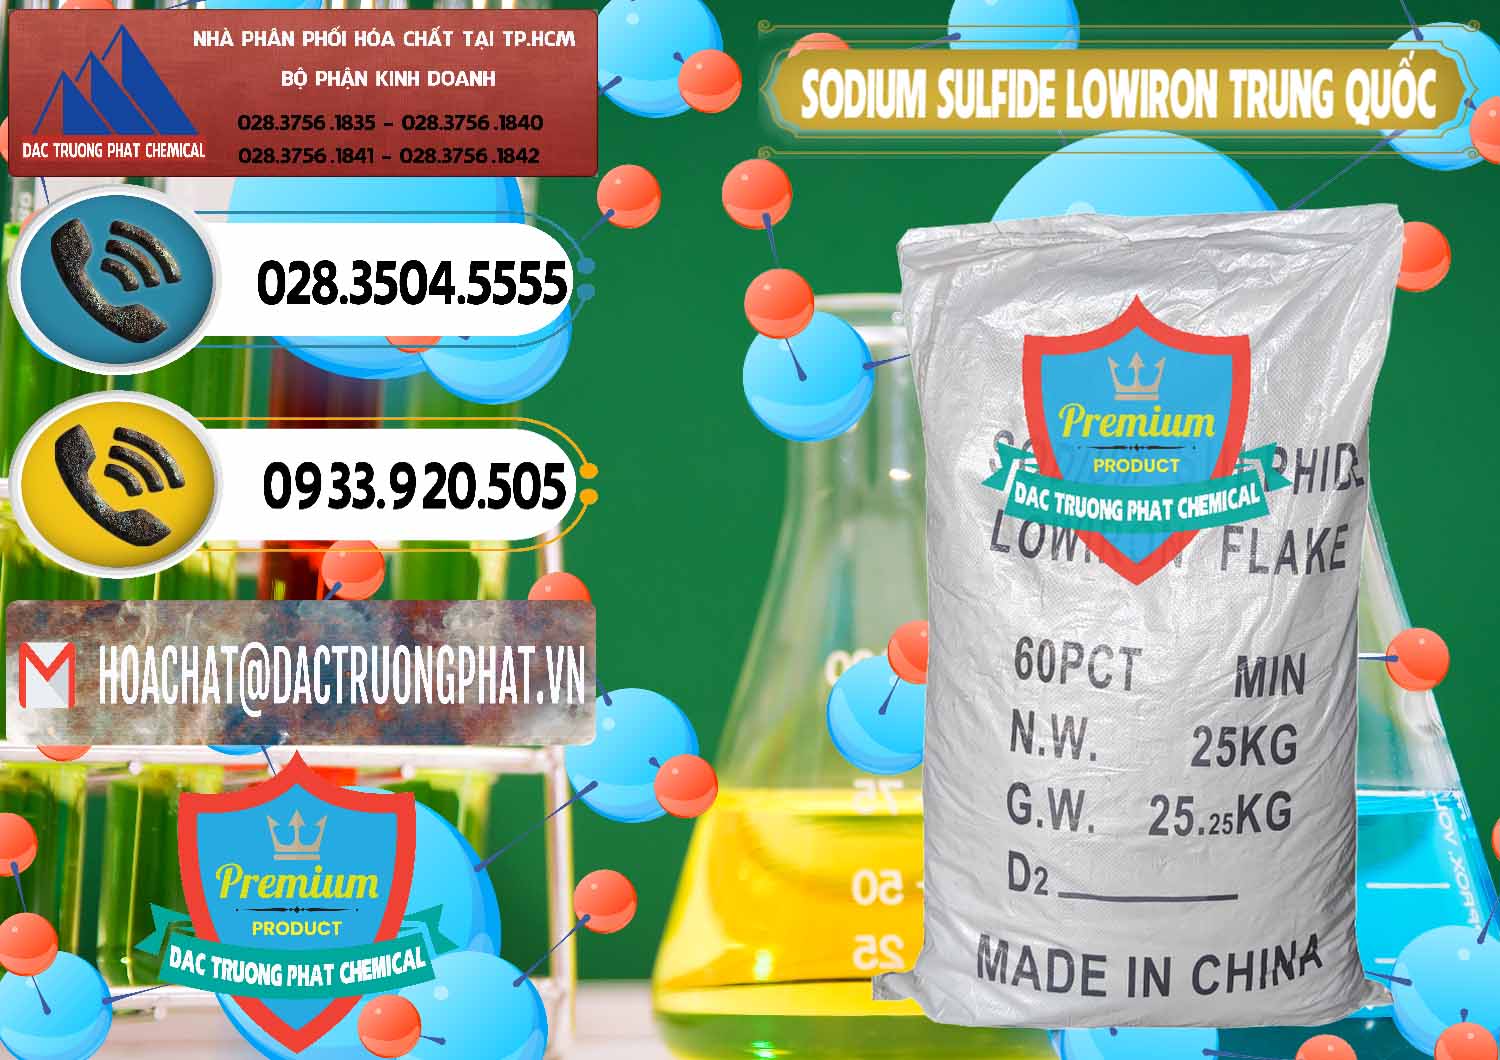 Đơn vị chuyên kinh doanh và bán Sodium Sulfide NA2S – Đá Thối Lowiron Trung Quốc China - 0227 - Đơn vị chuyên cung cấp & kinh doanh hóa chất tại TP.HCM - hoachatdetnhuom.vn